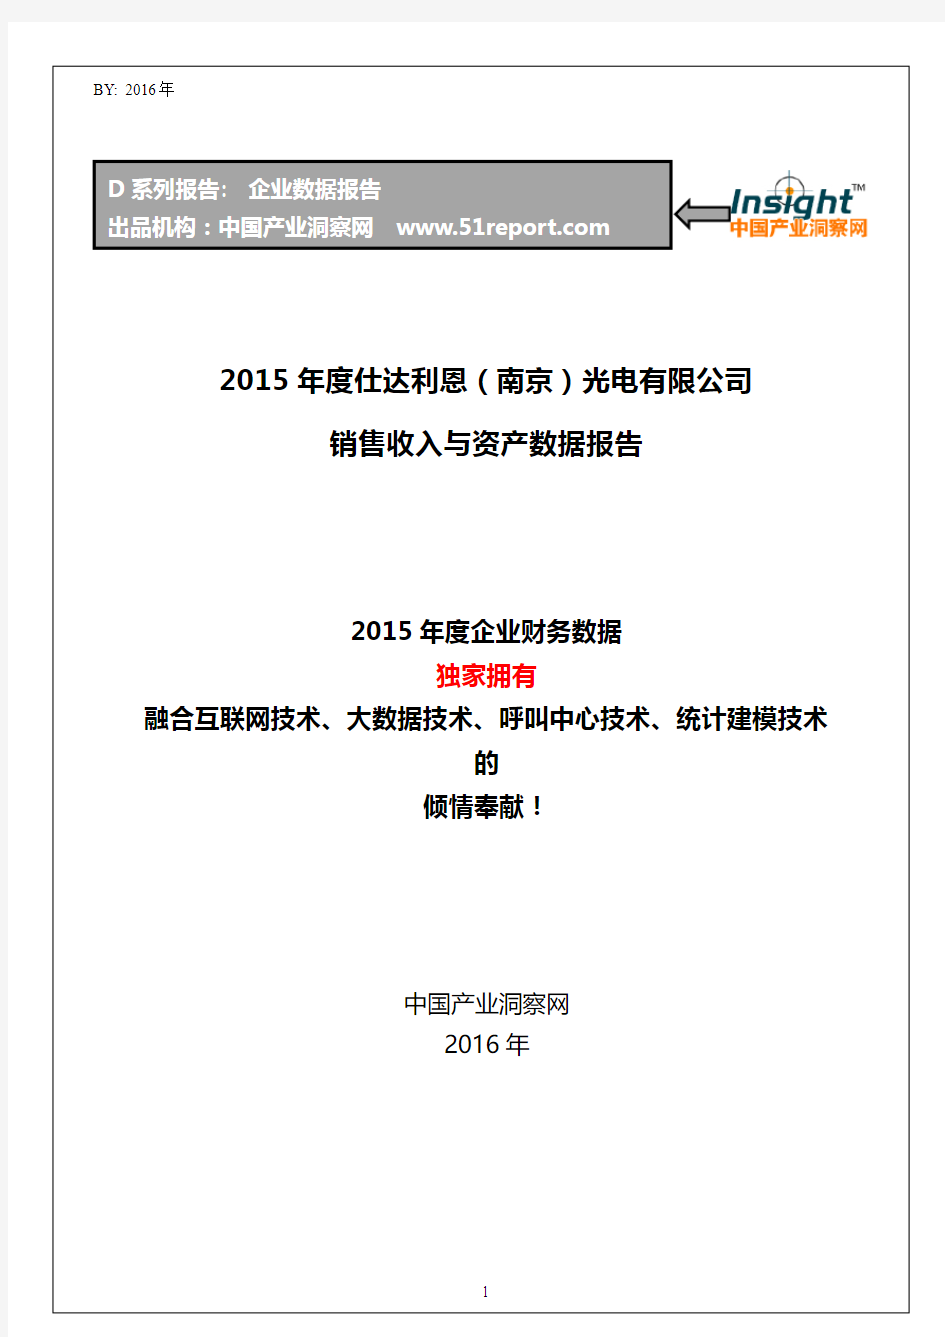 2015年度仕达利恩(南京)光电有限公司销售收入与资产数据报告